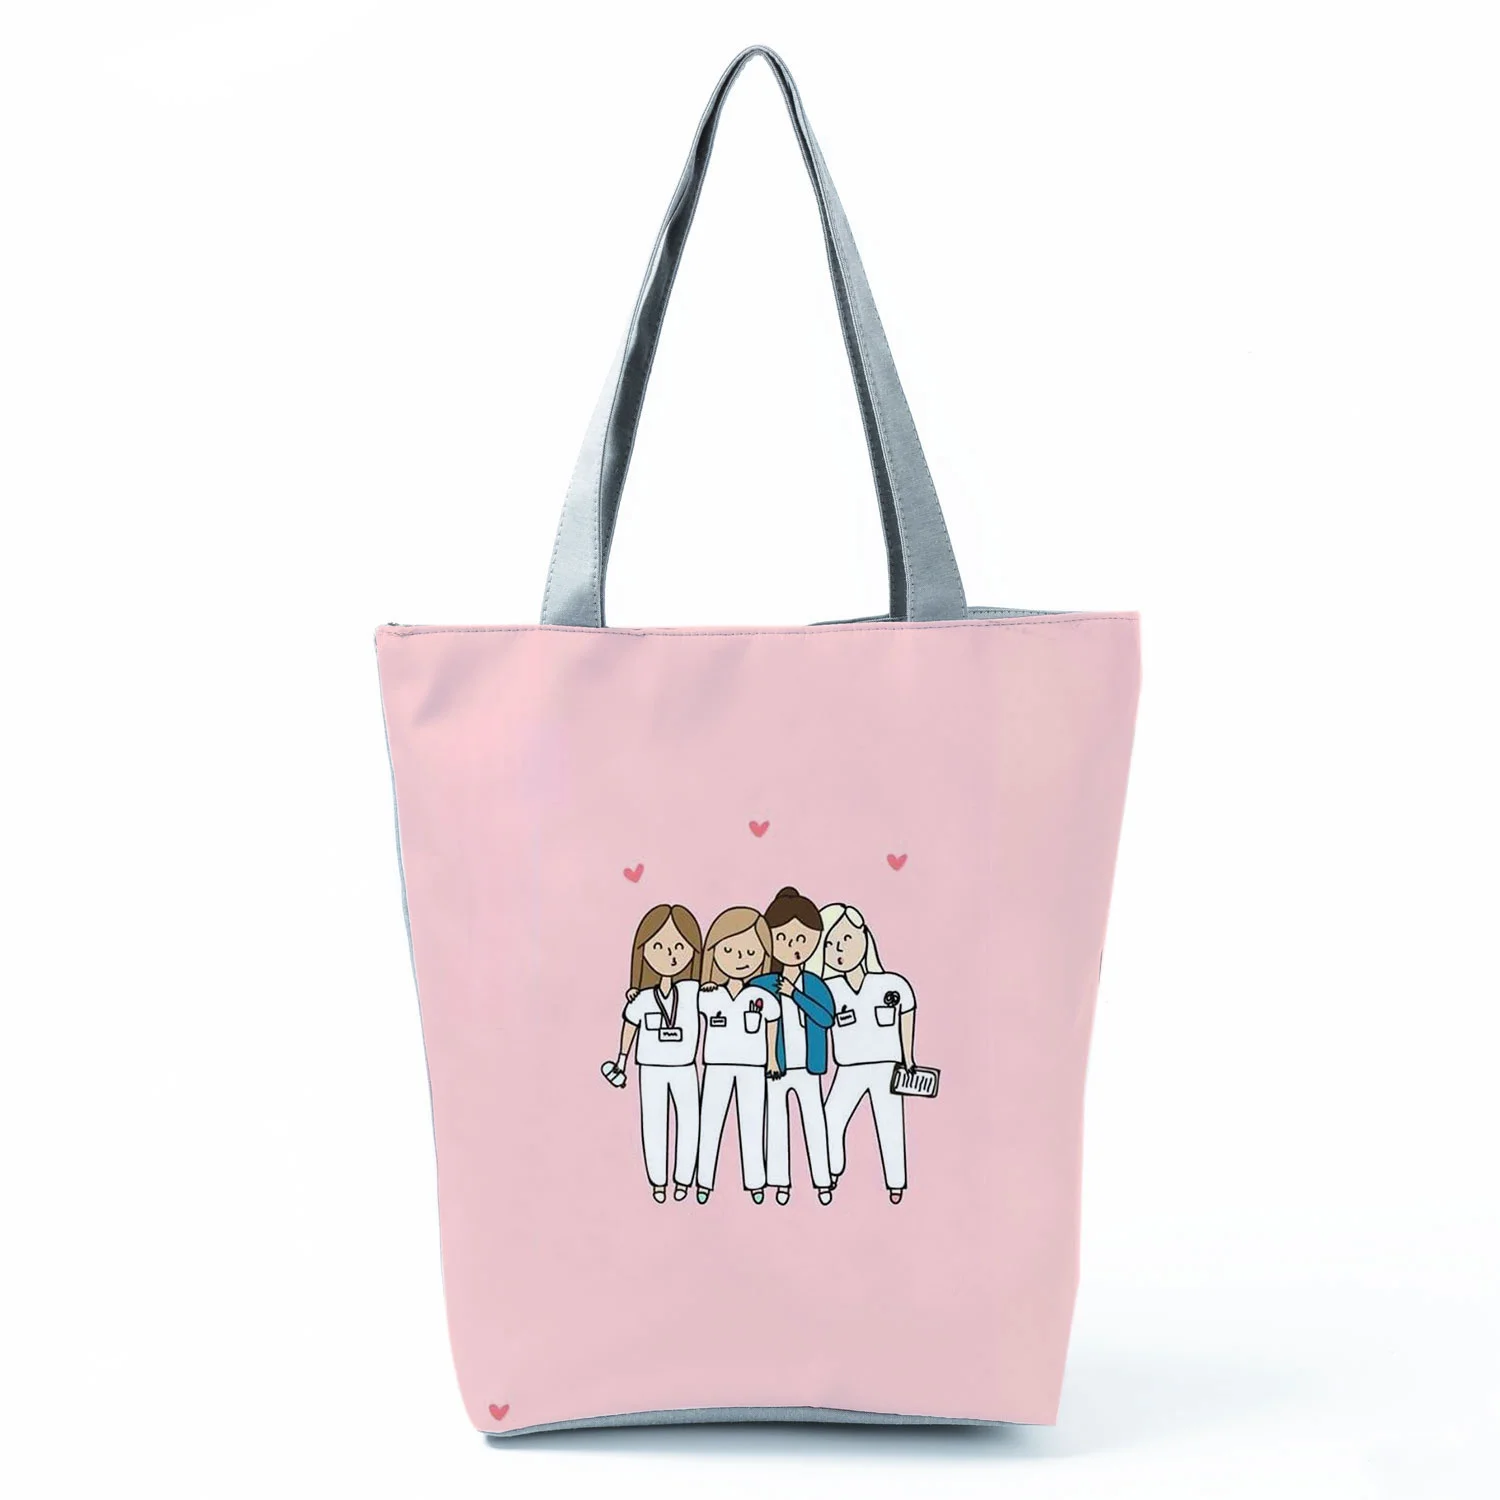 Женская сумка-тоут с принтом Love, универсальная сумка с мультипликационным принтом для медсестер, Экологичная пляжная сумка, вместительные ...